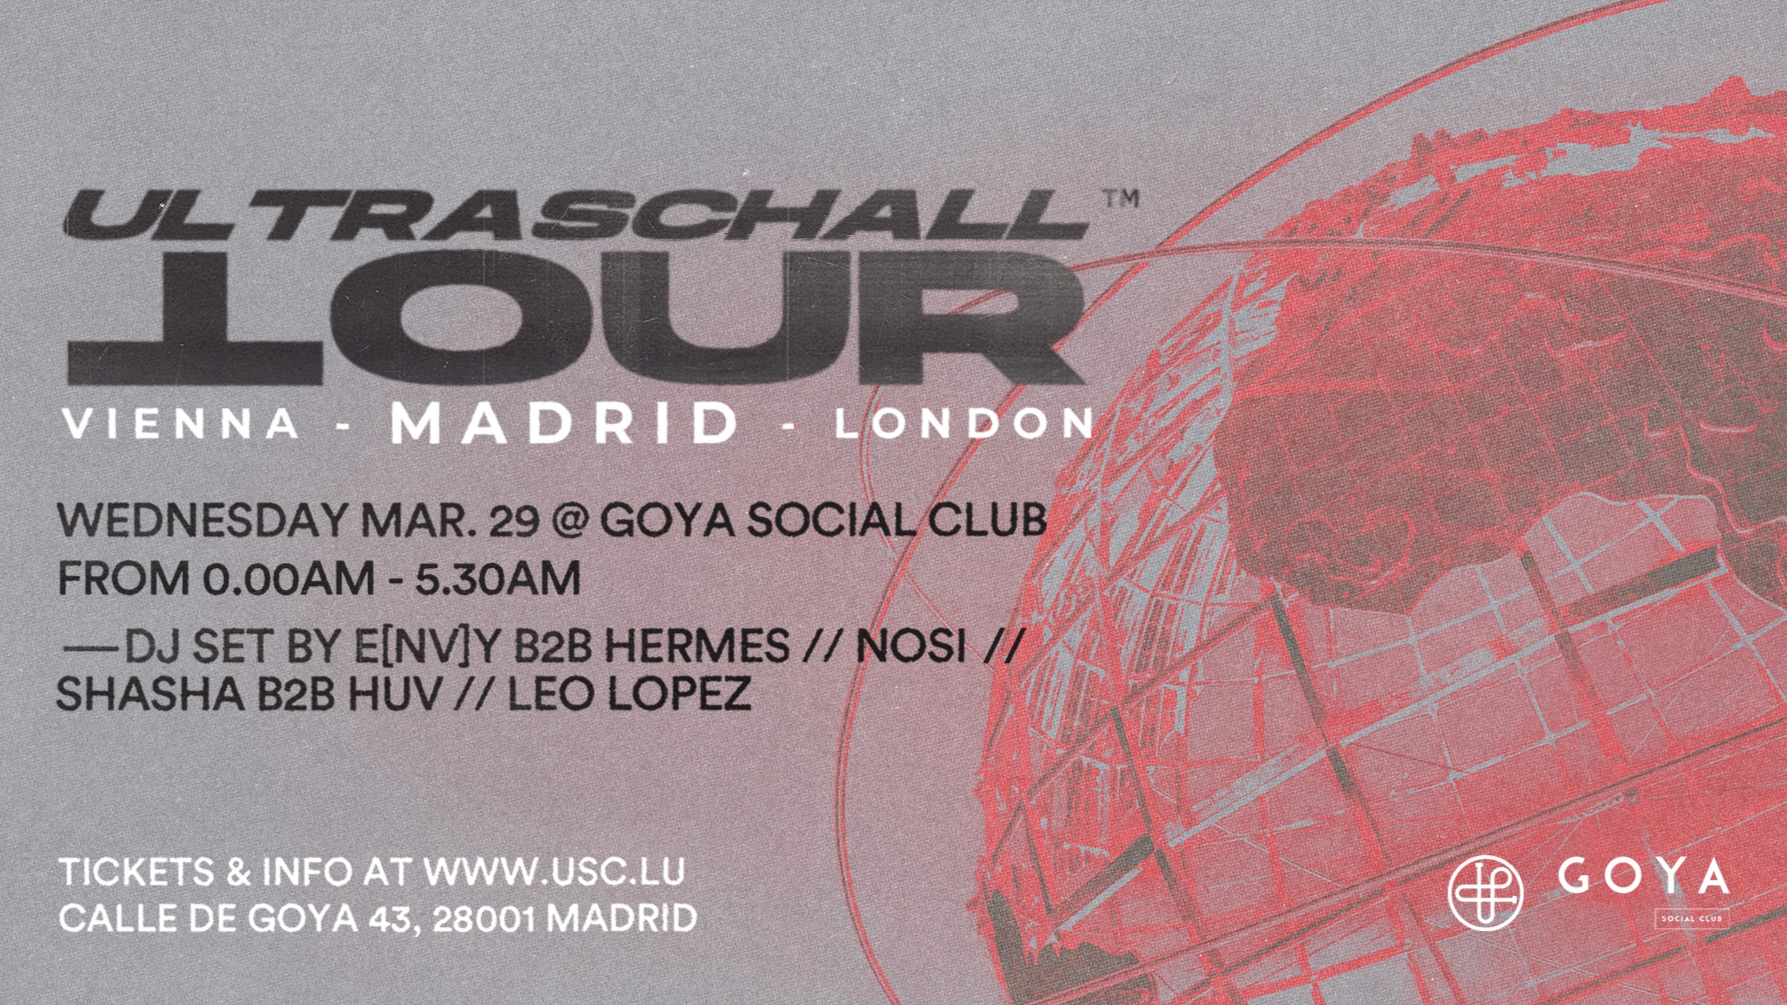 Ultraschall @ Goya Social Club at Goya Social Club | Tickets & Guest Lists